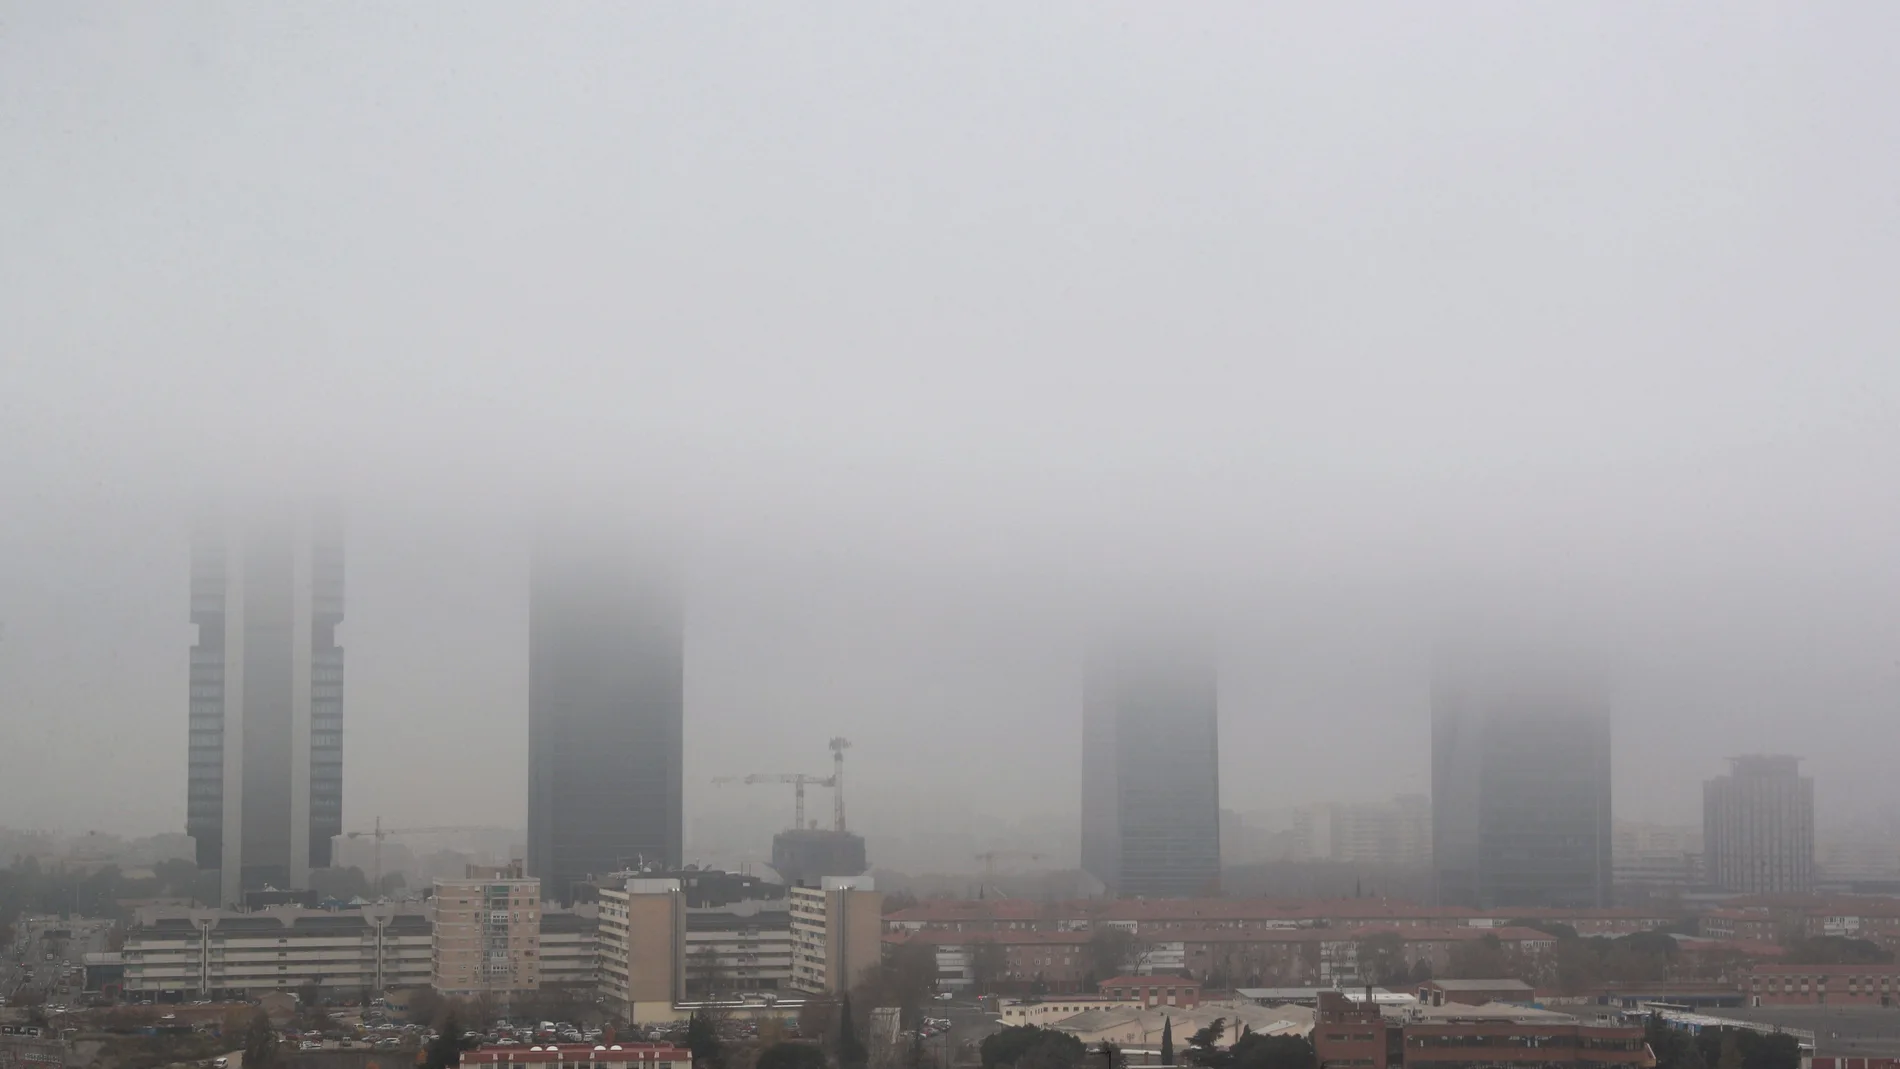 Vista de las Cuatro Torres de Madrid cubiertas por la niebla